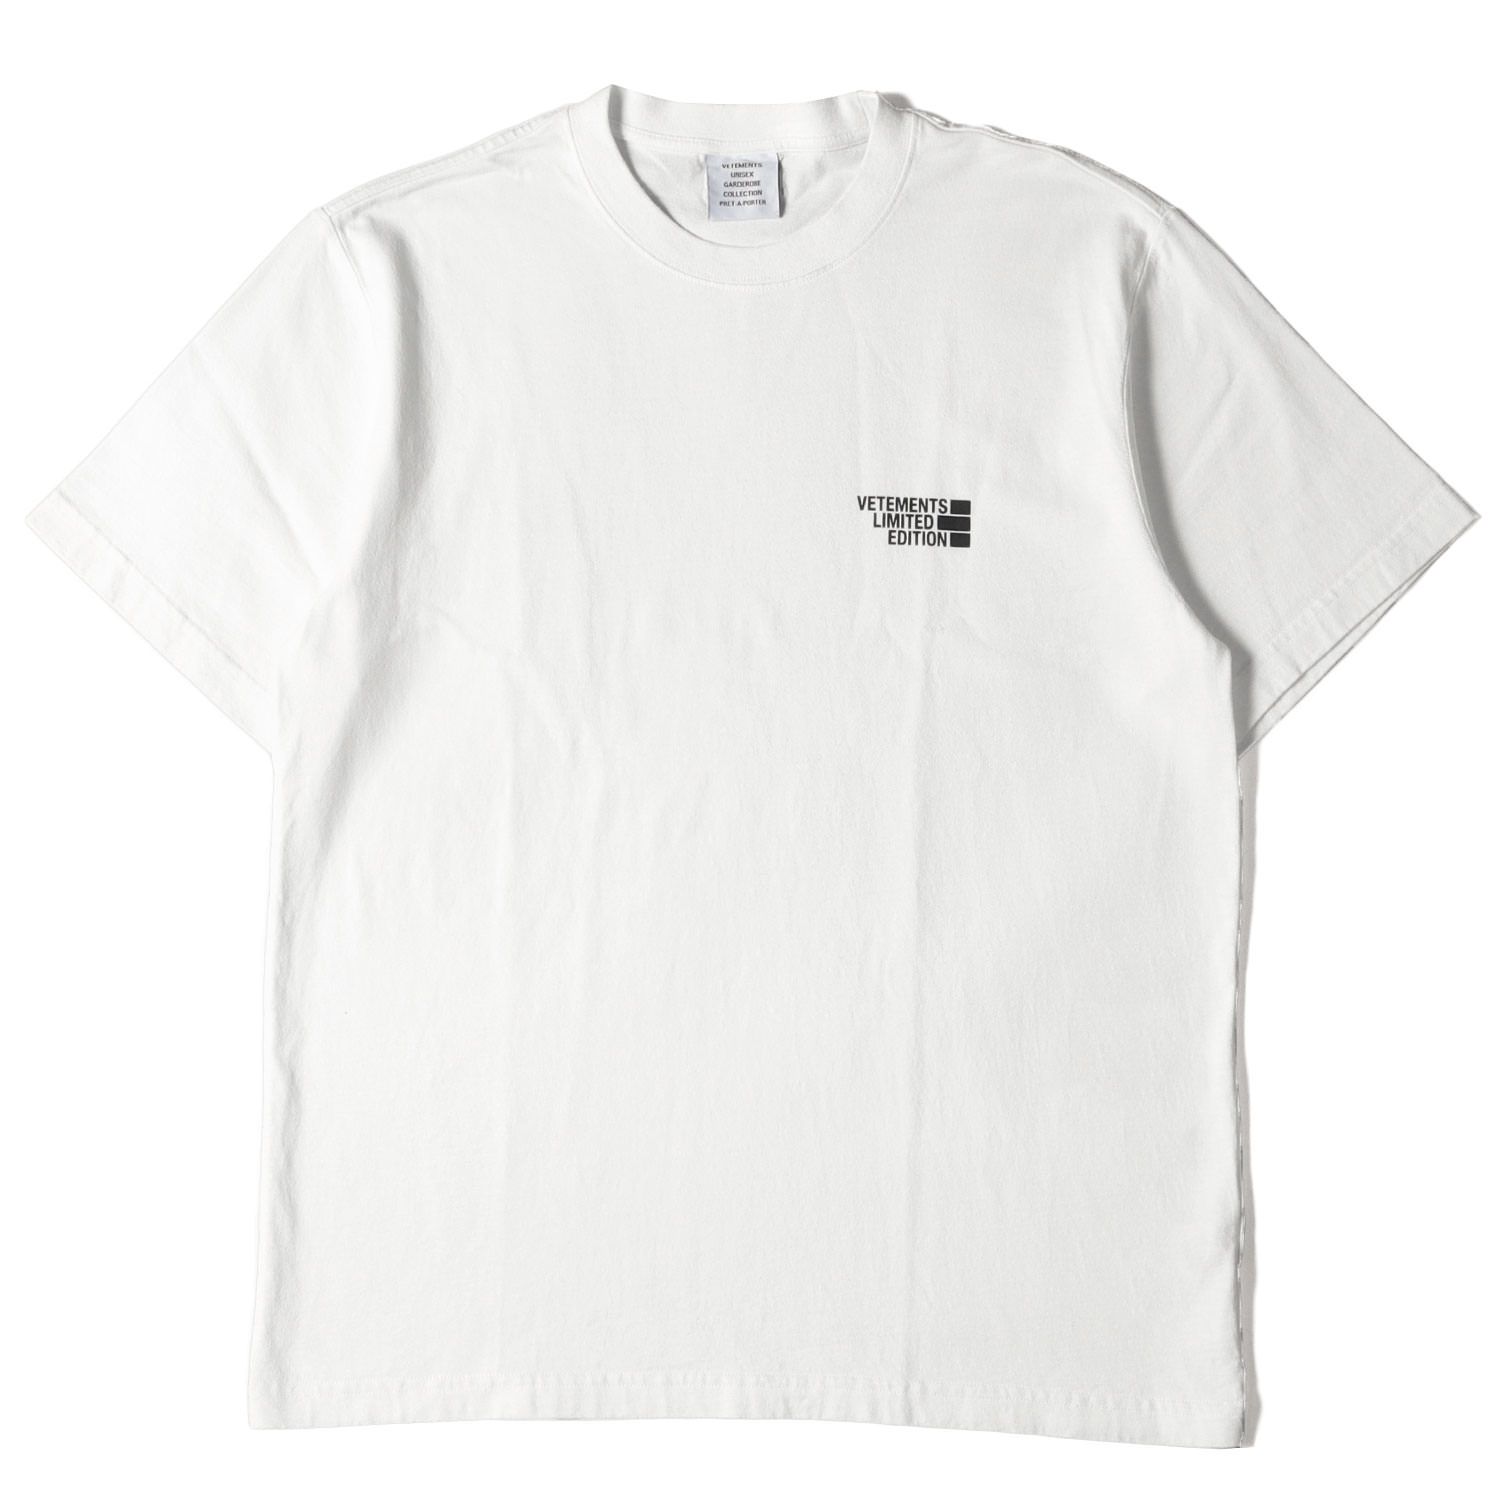 VETEMENTS ヴェトモン Tシャツ サイズ:M ブランドロゴ 半袖 Logo Limited Edition T-shirt 21SS ホワイト  白 トップス カットソー カジュアル ブランド ストリート シンプル ワンポイント